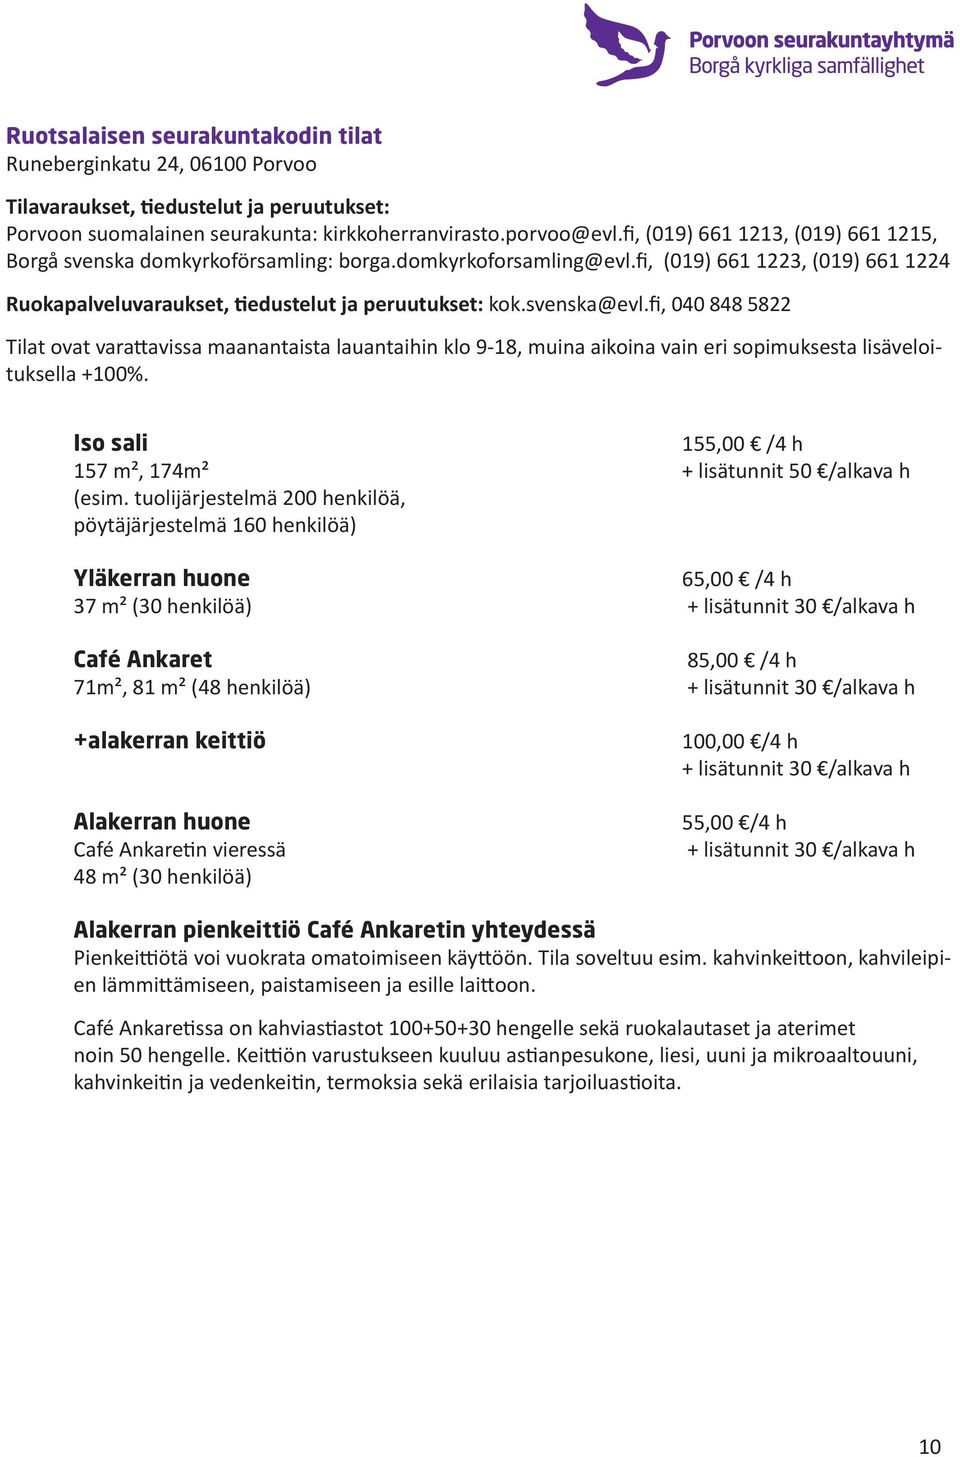 svenska@evl.fi, 040 848 5822 Tilat ovat varattavissa maanantaista lauantaihin klo 9-18, muina aikoina vain eri sopimuksesta lisäveloituksella +100%.